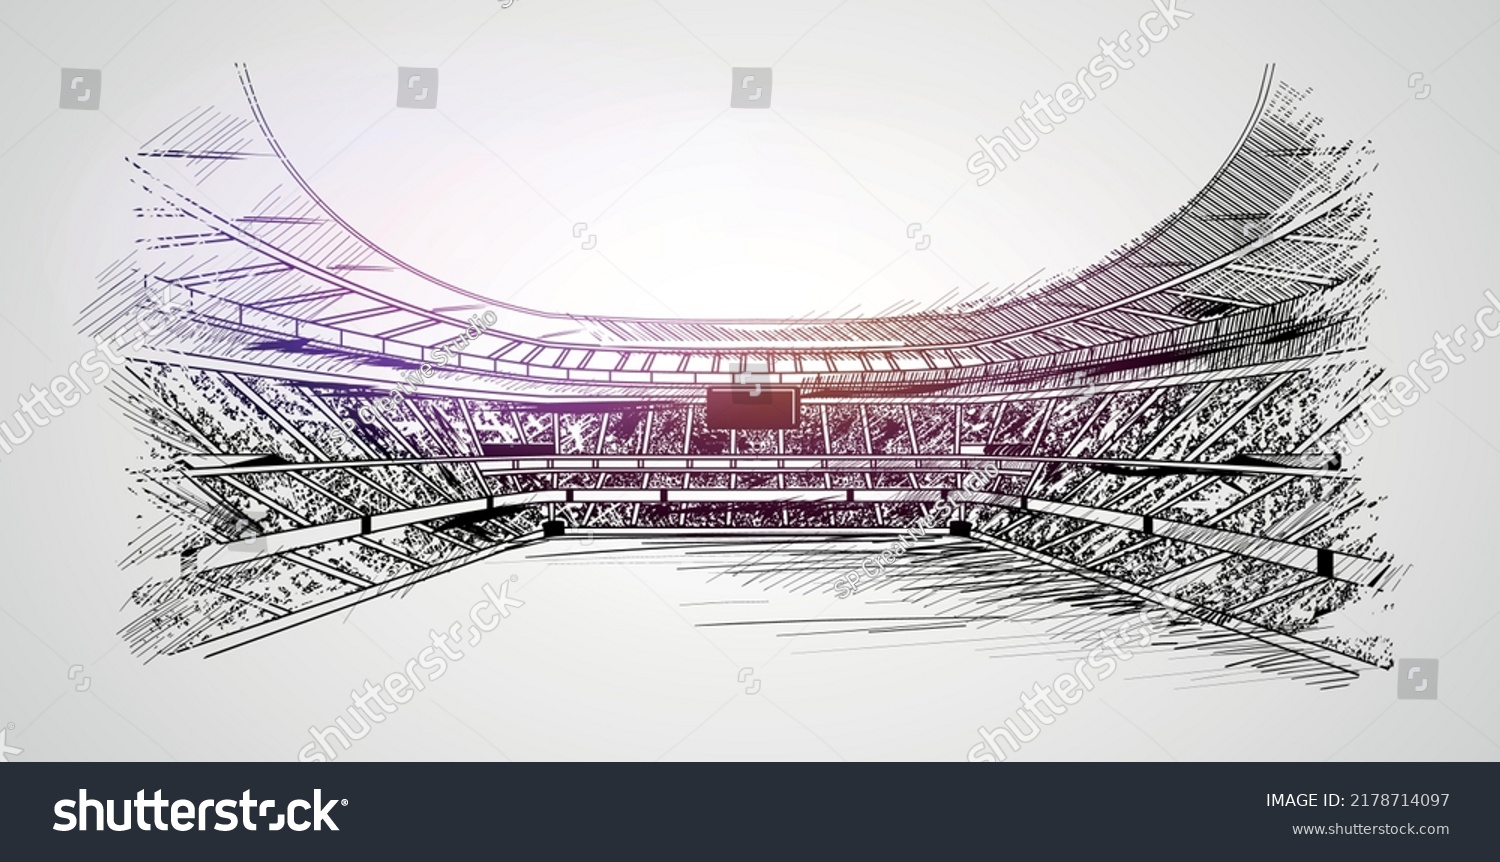 Soccer stadium sketch vector. Football or cricket stadium line drawing illustration. #2178714097